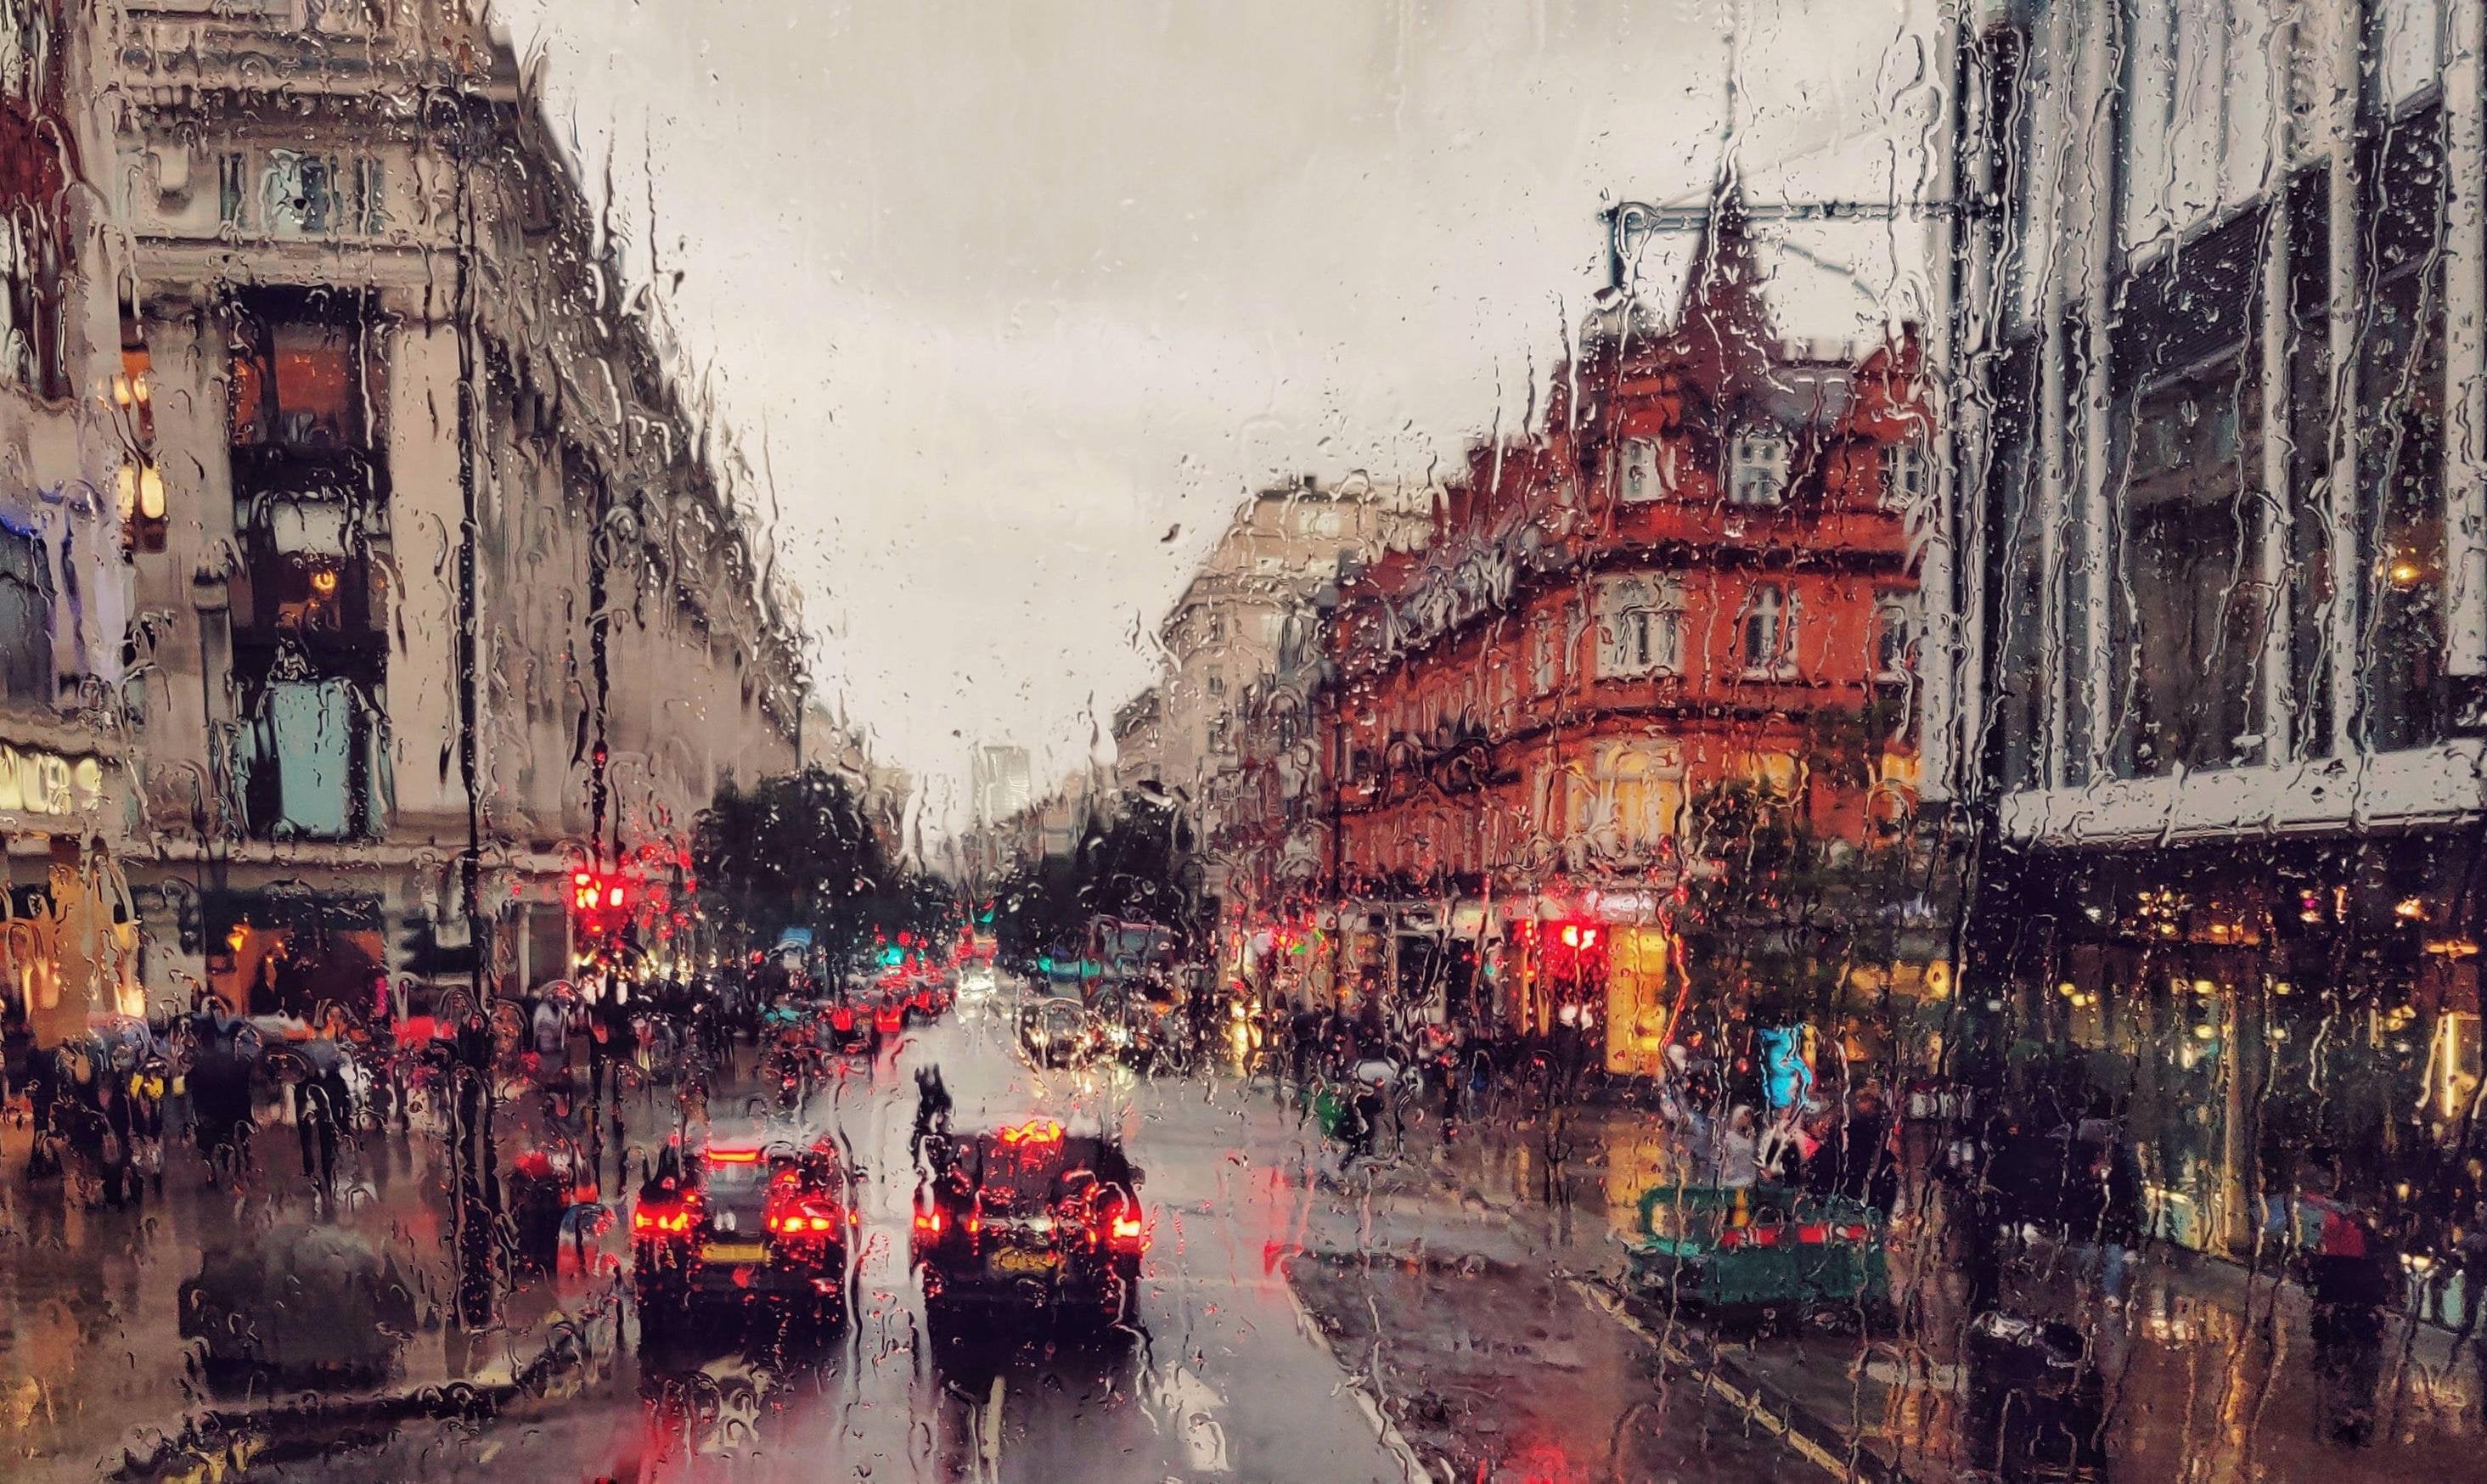 Дождь в лондоне